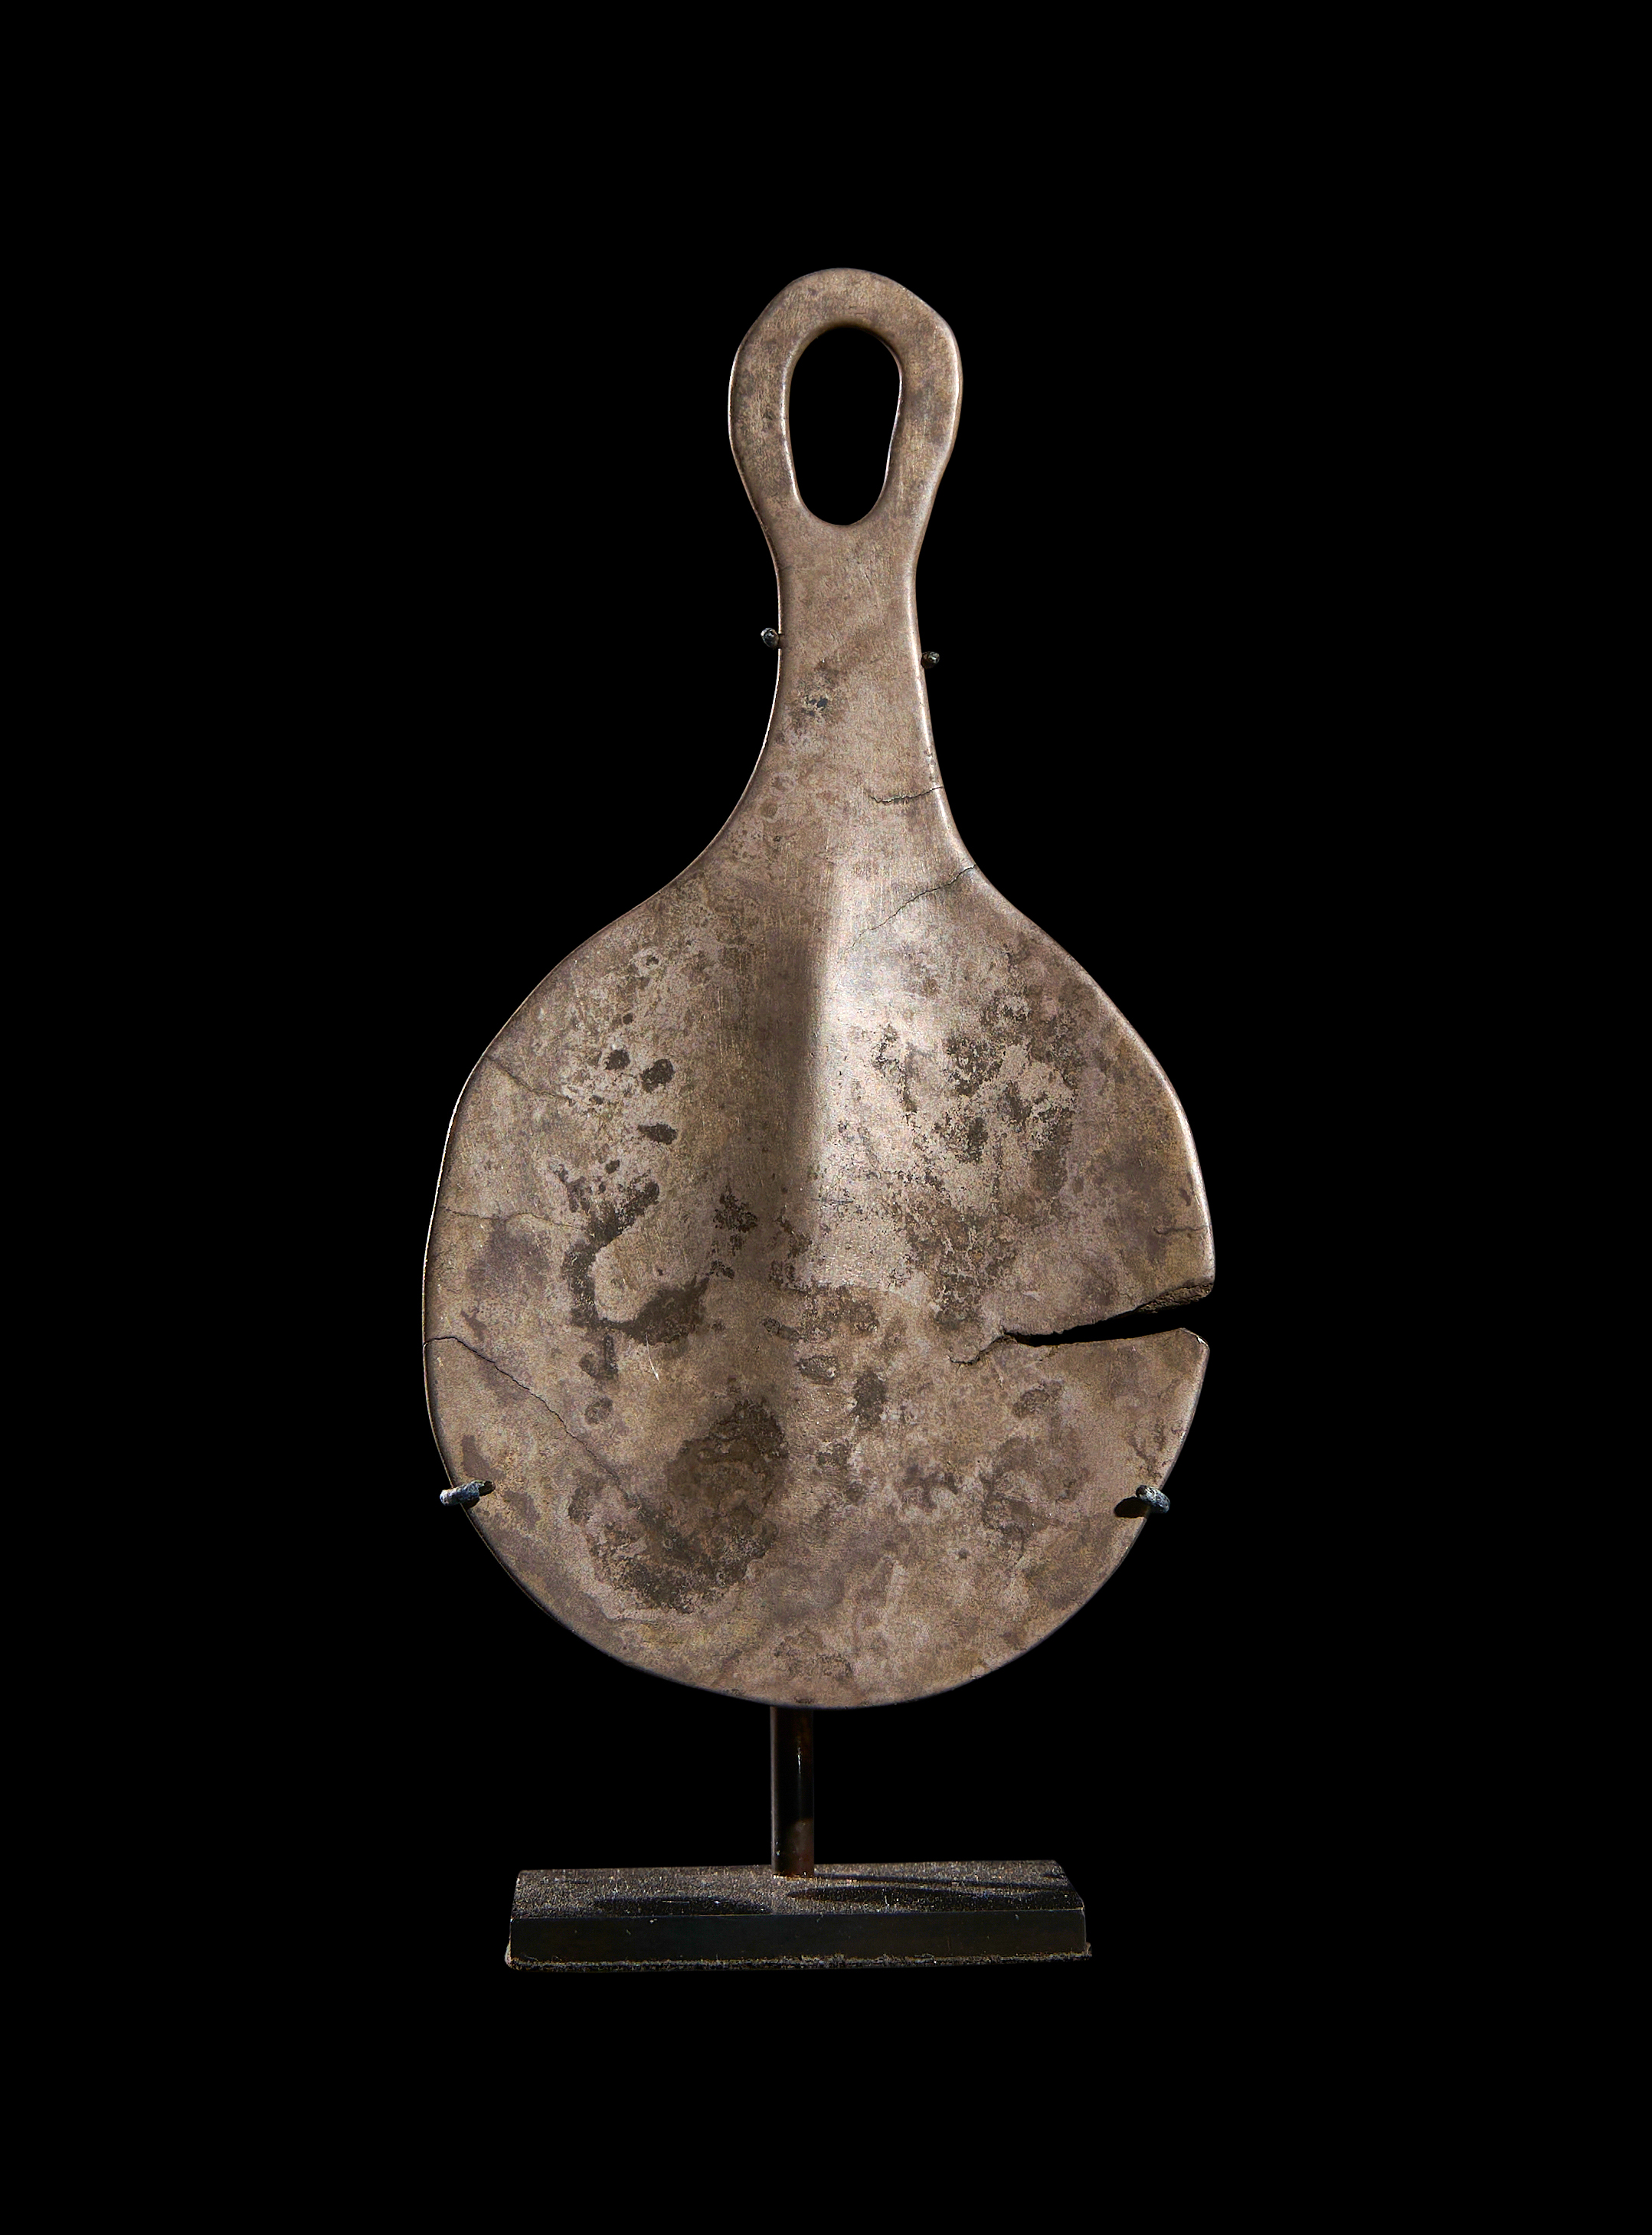 AN ANATOLIAN SILVER "MIRROR" EYE IDOL EARLY BRONZE AGE II, CIRCA 2700-2300 B.C.